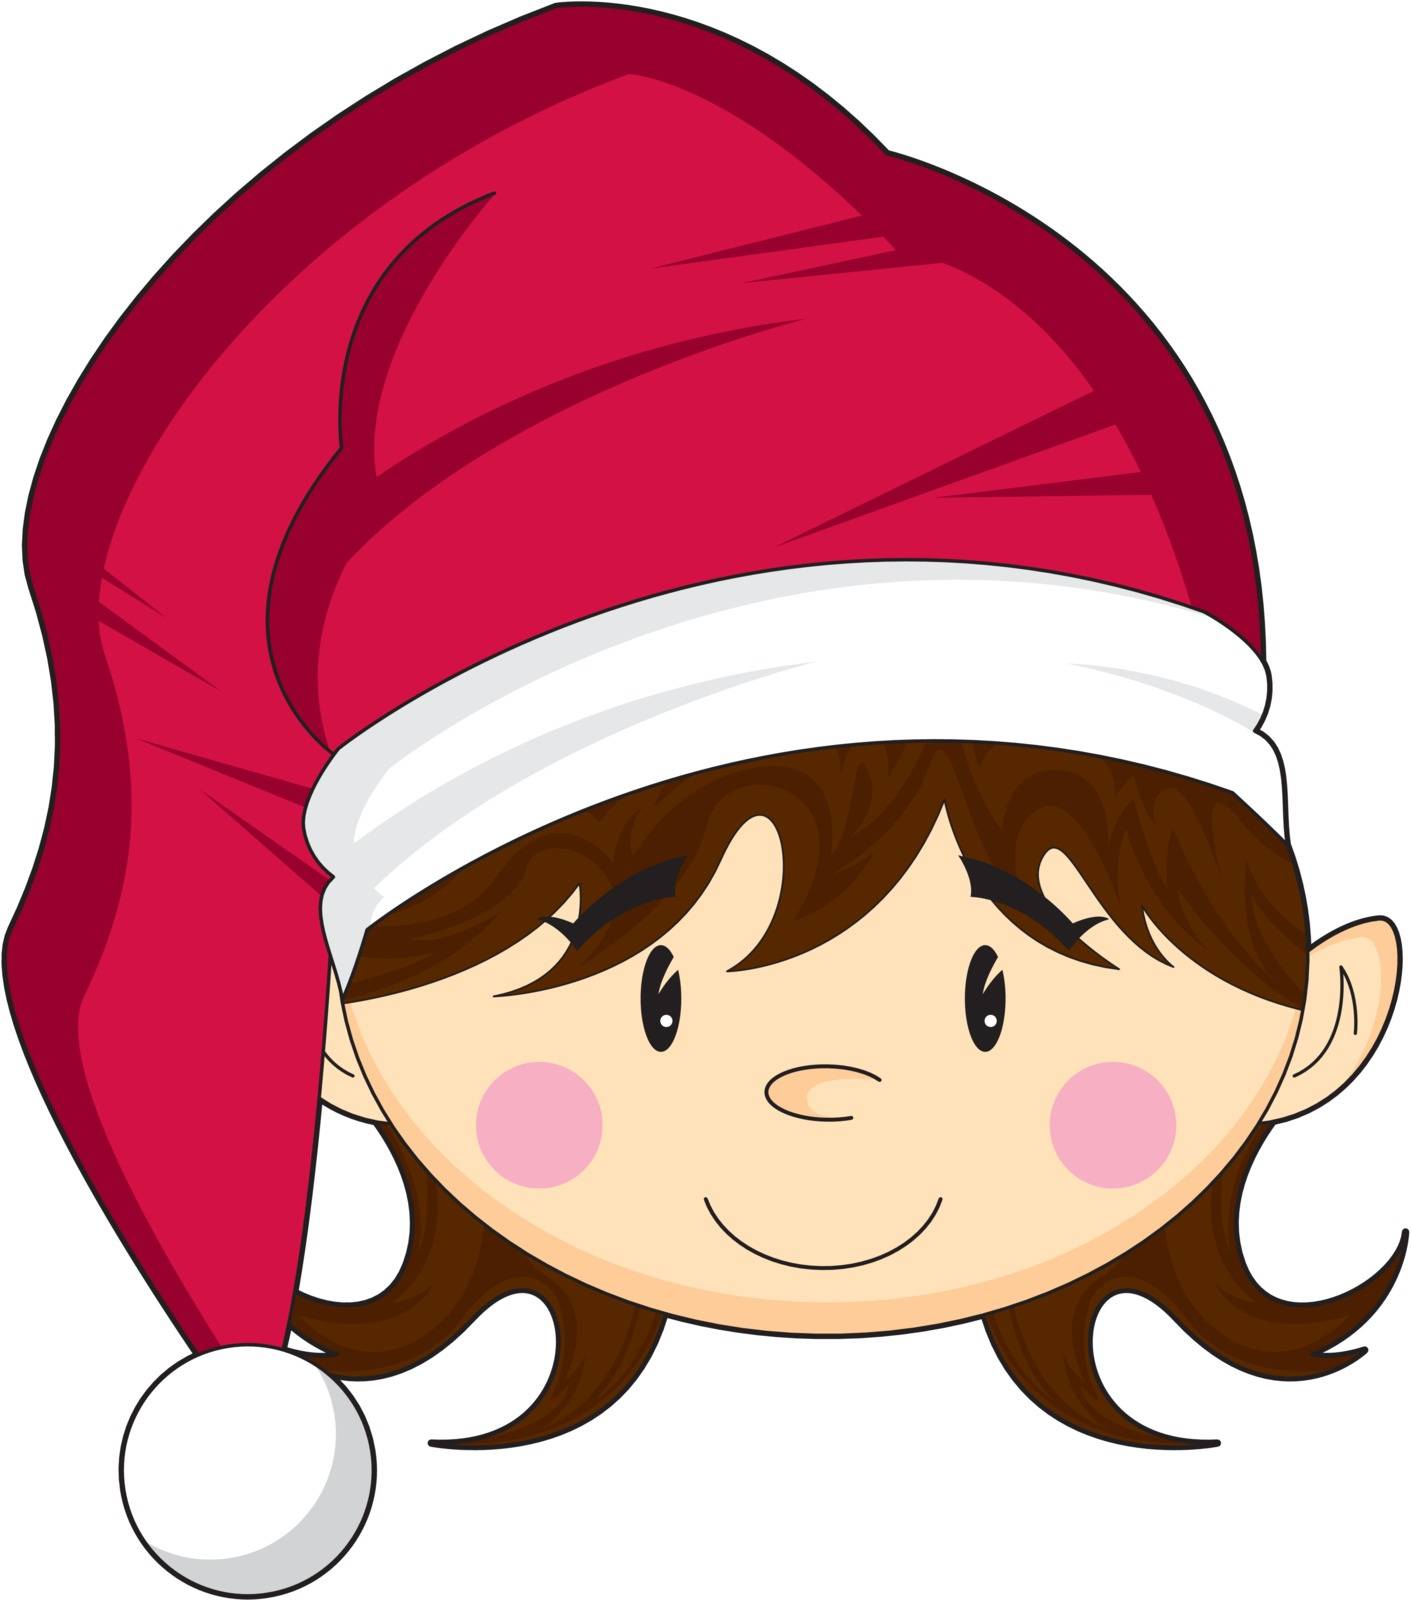 Cute Cartoon Santa Elf by markmurphycreative